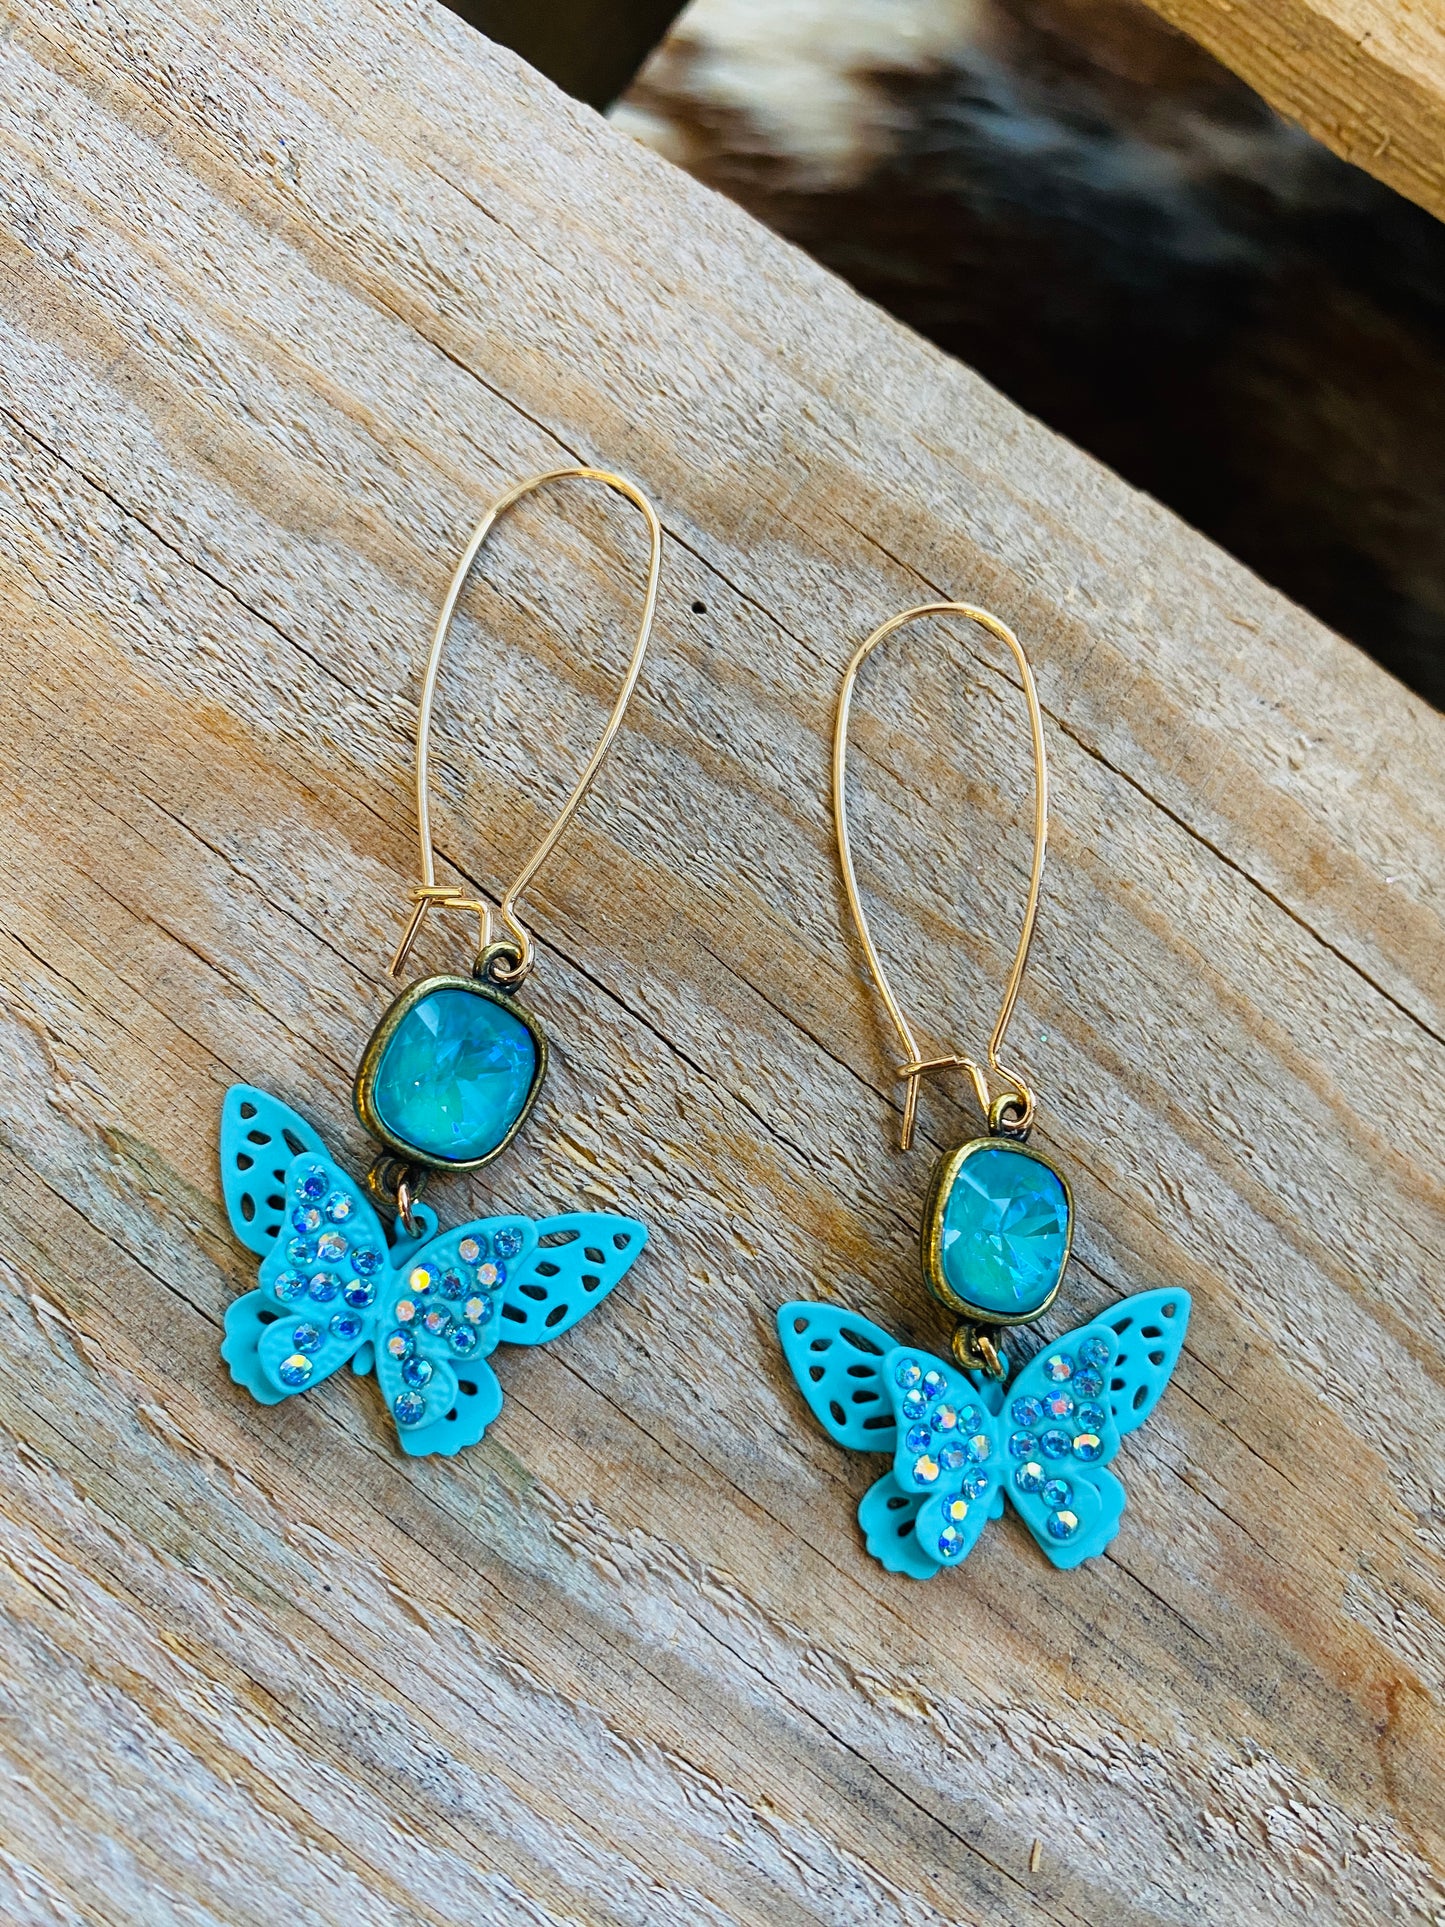 Teal Butterfly earrings